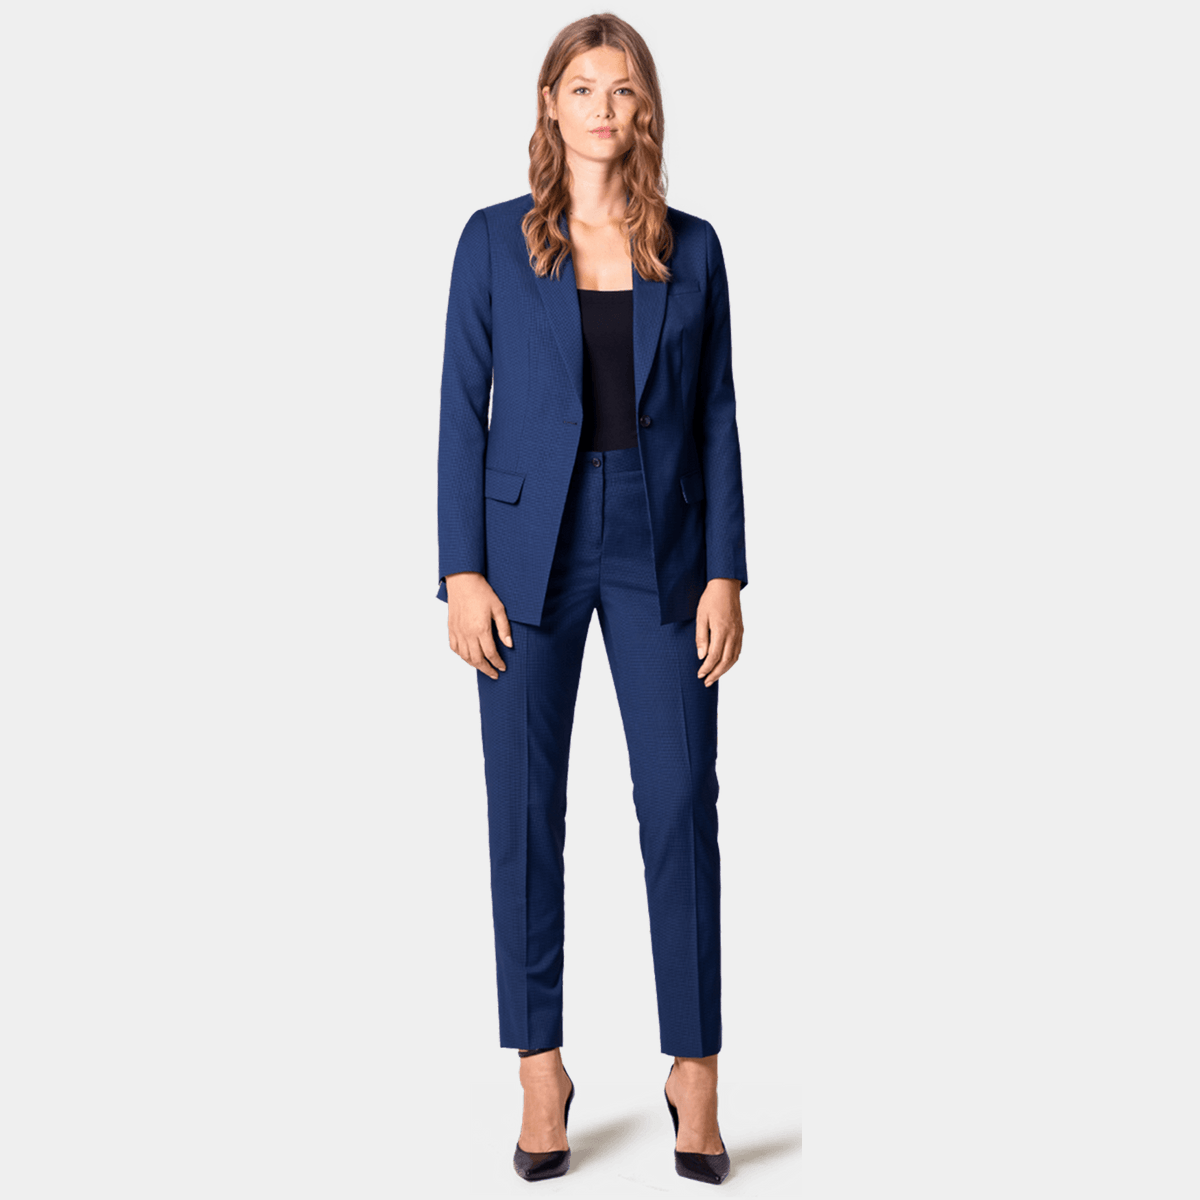 Premium Blue wool Pant Suit $389 | Sumissura